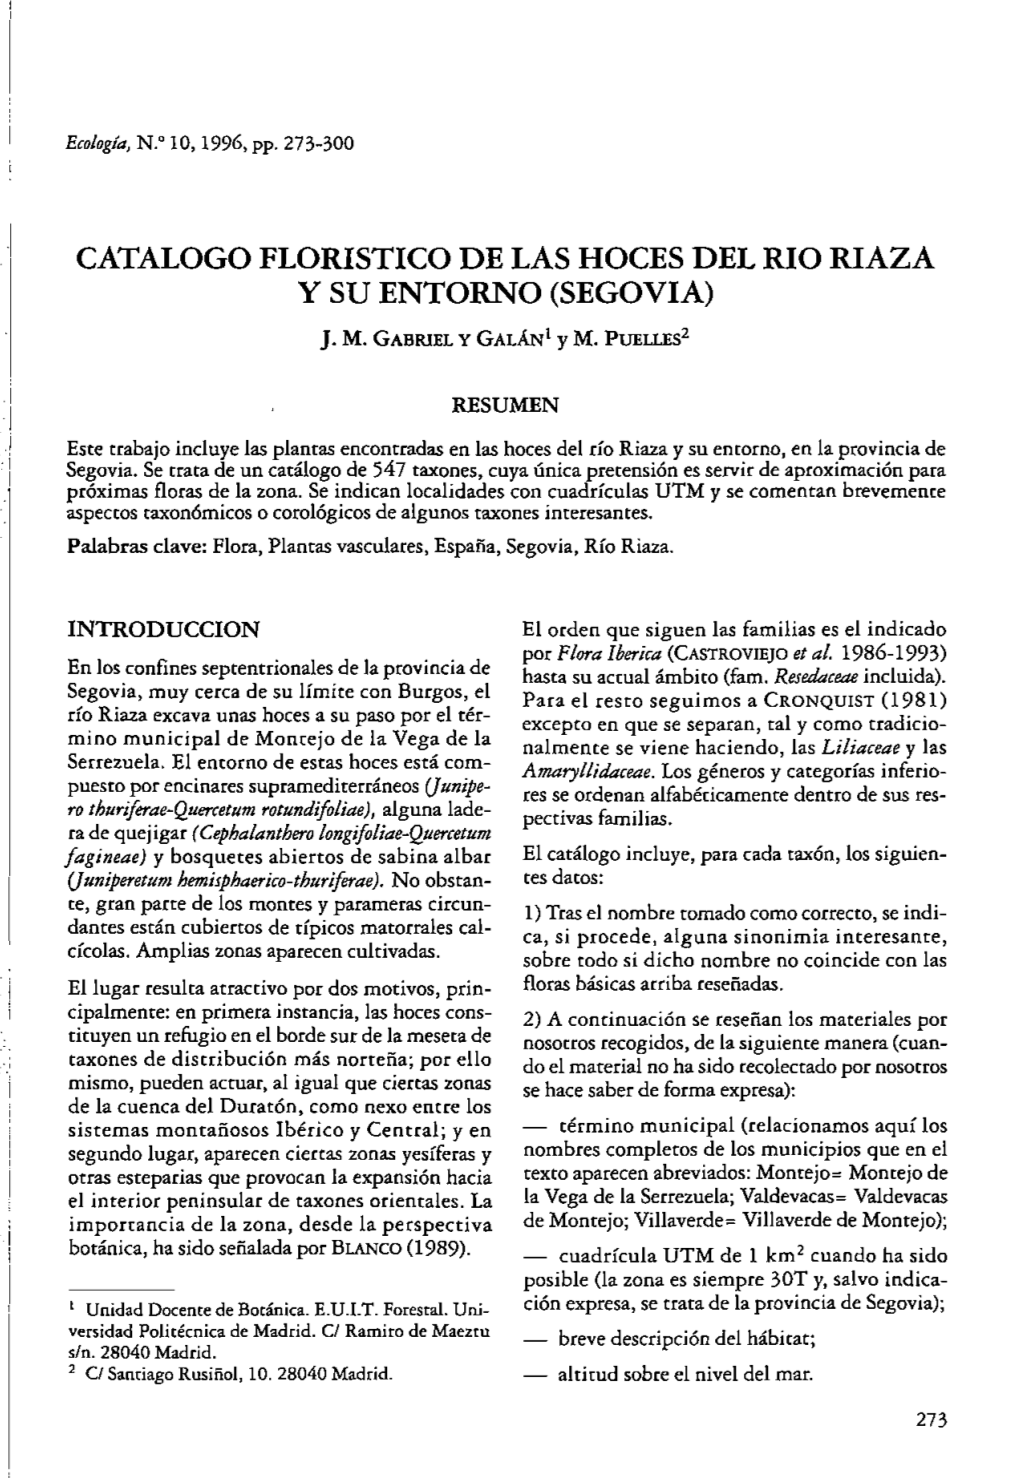 CATALOGO FLORISTICO DE LAS HOCES DEL RIO RIAZA Y SU ENTORNO (SEGOVIA)